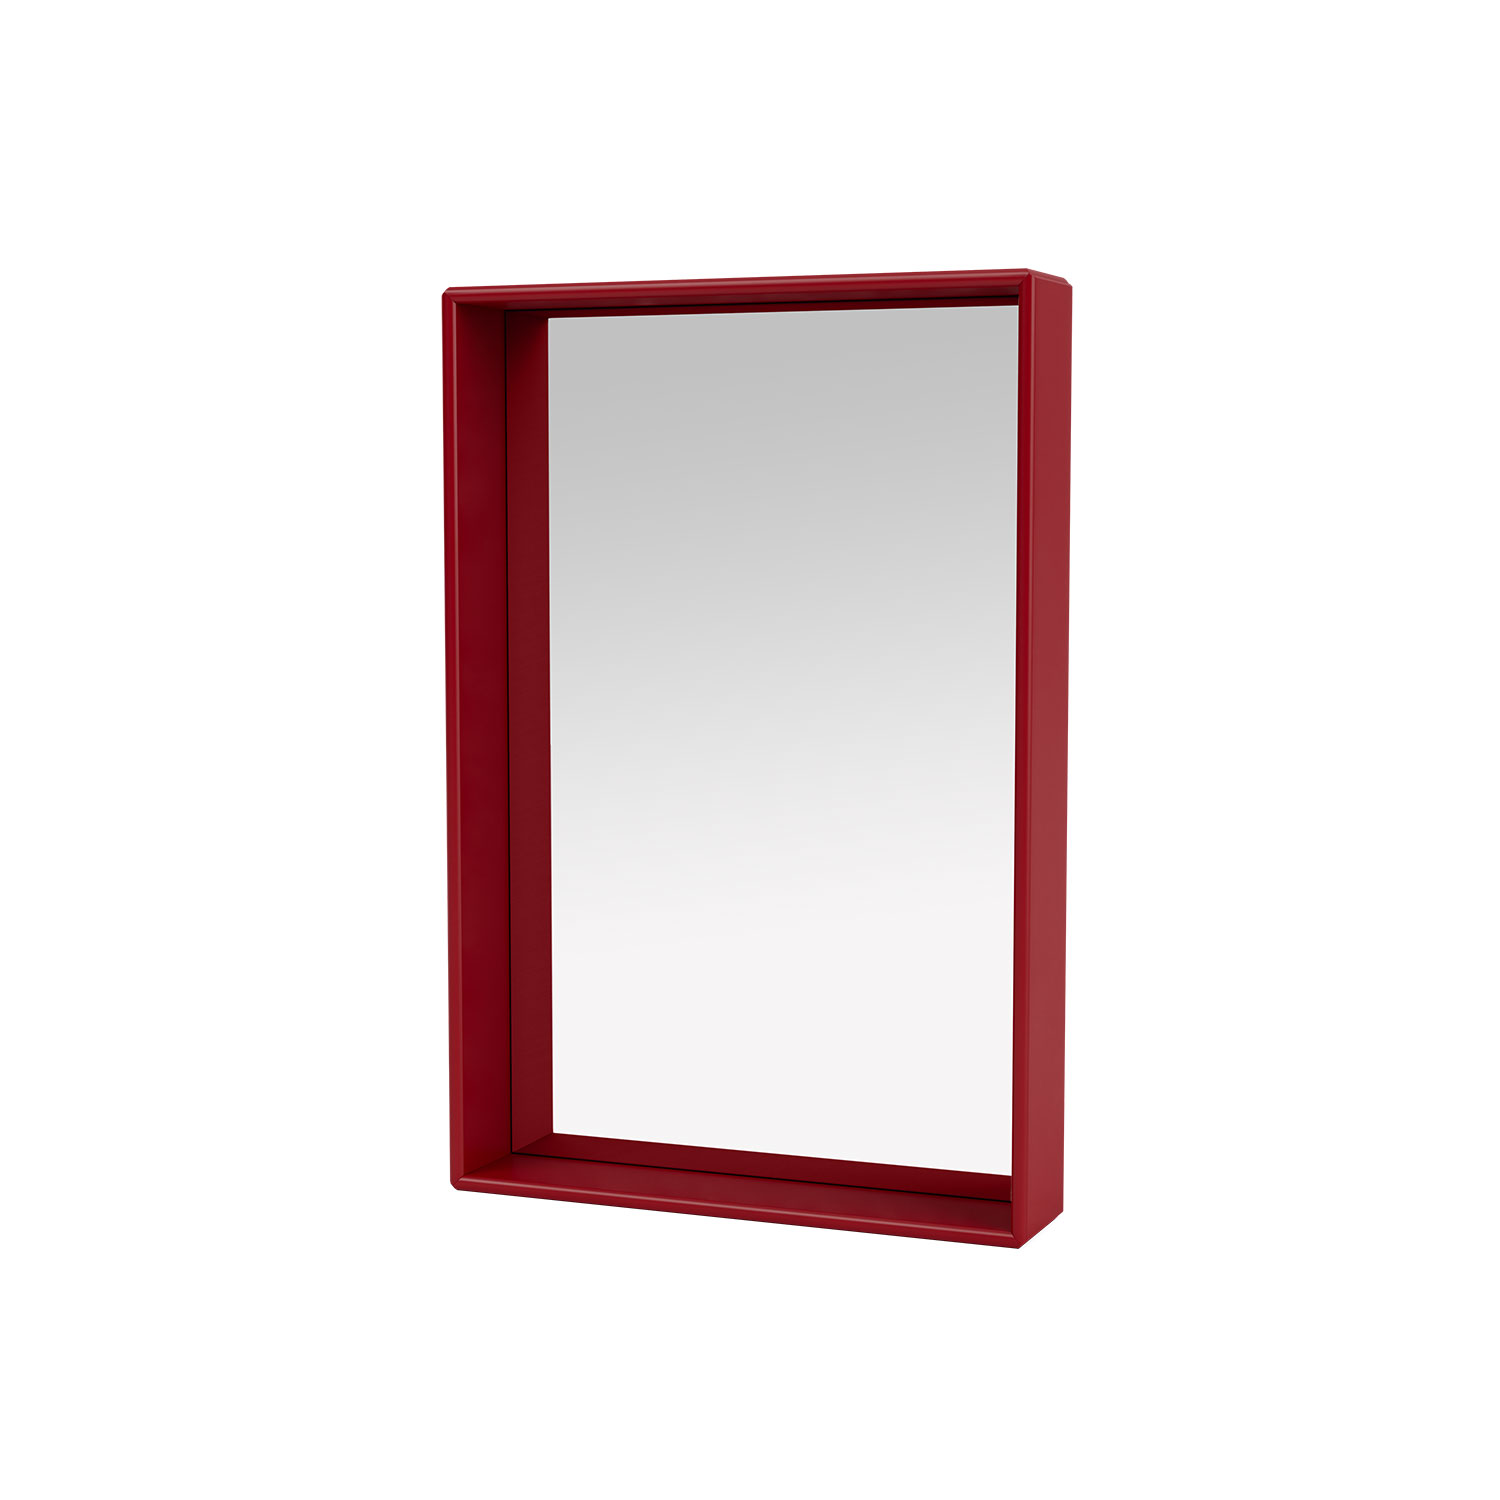 SHELFIE mirror with shelf, Beetroot